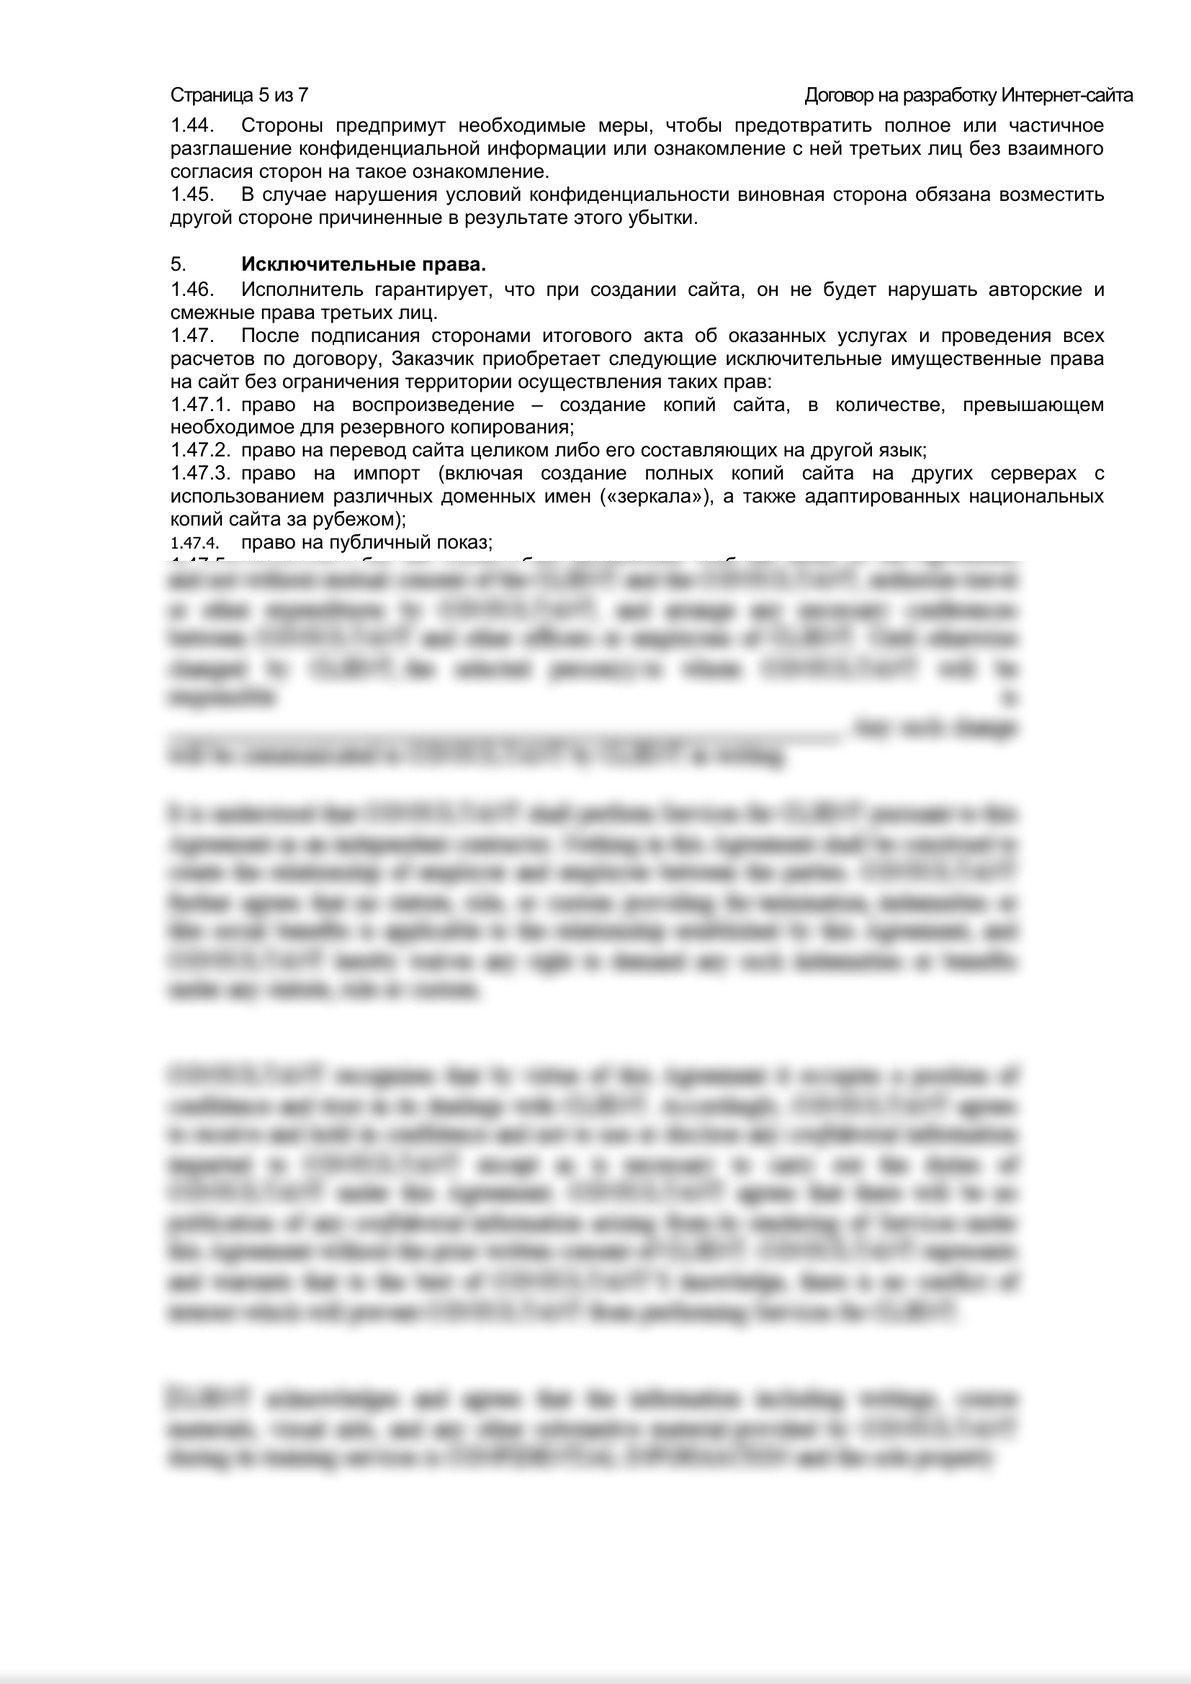 Шаблон договора на разработку Интернет-сайта-4